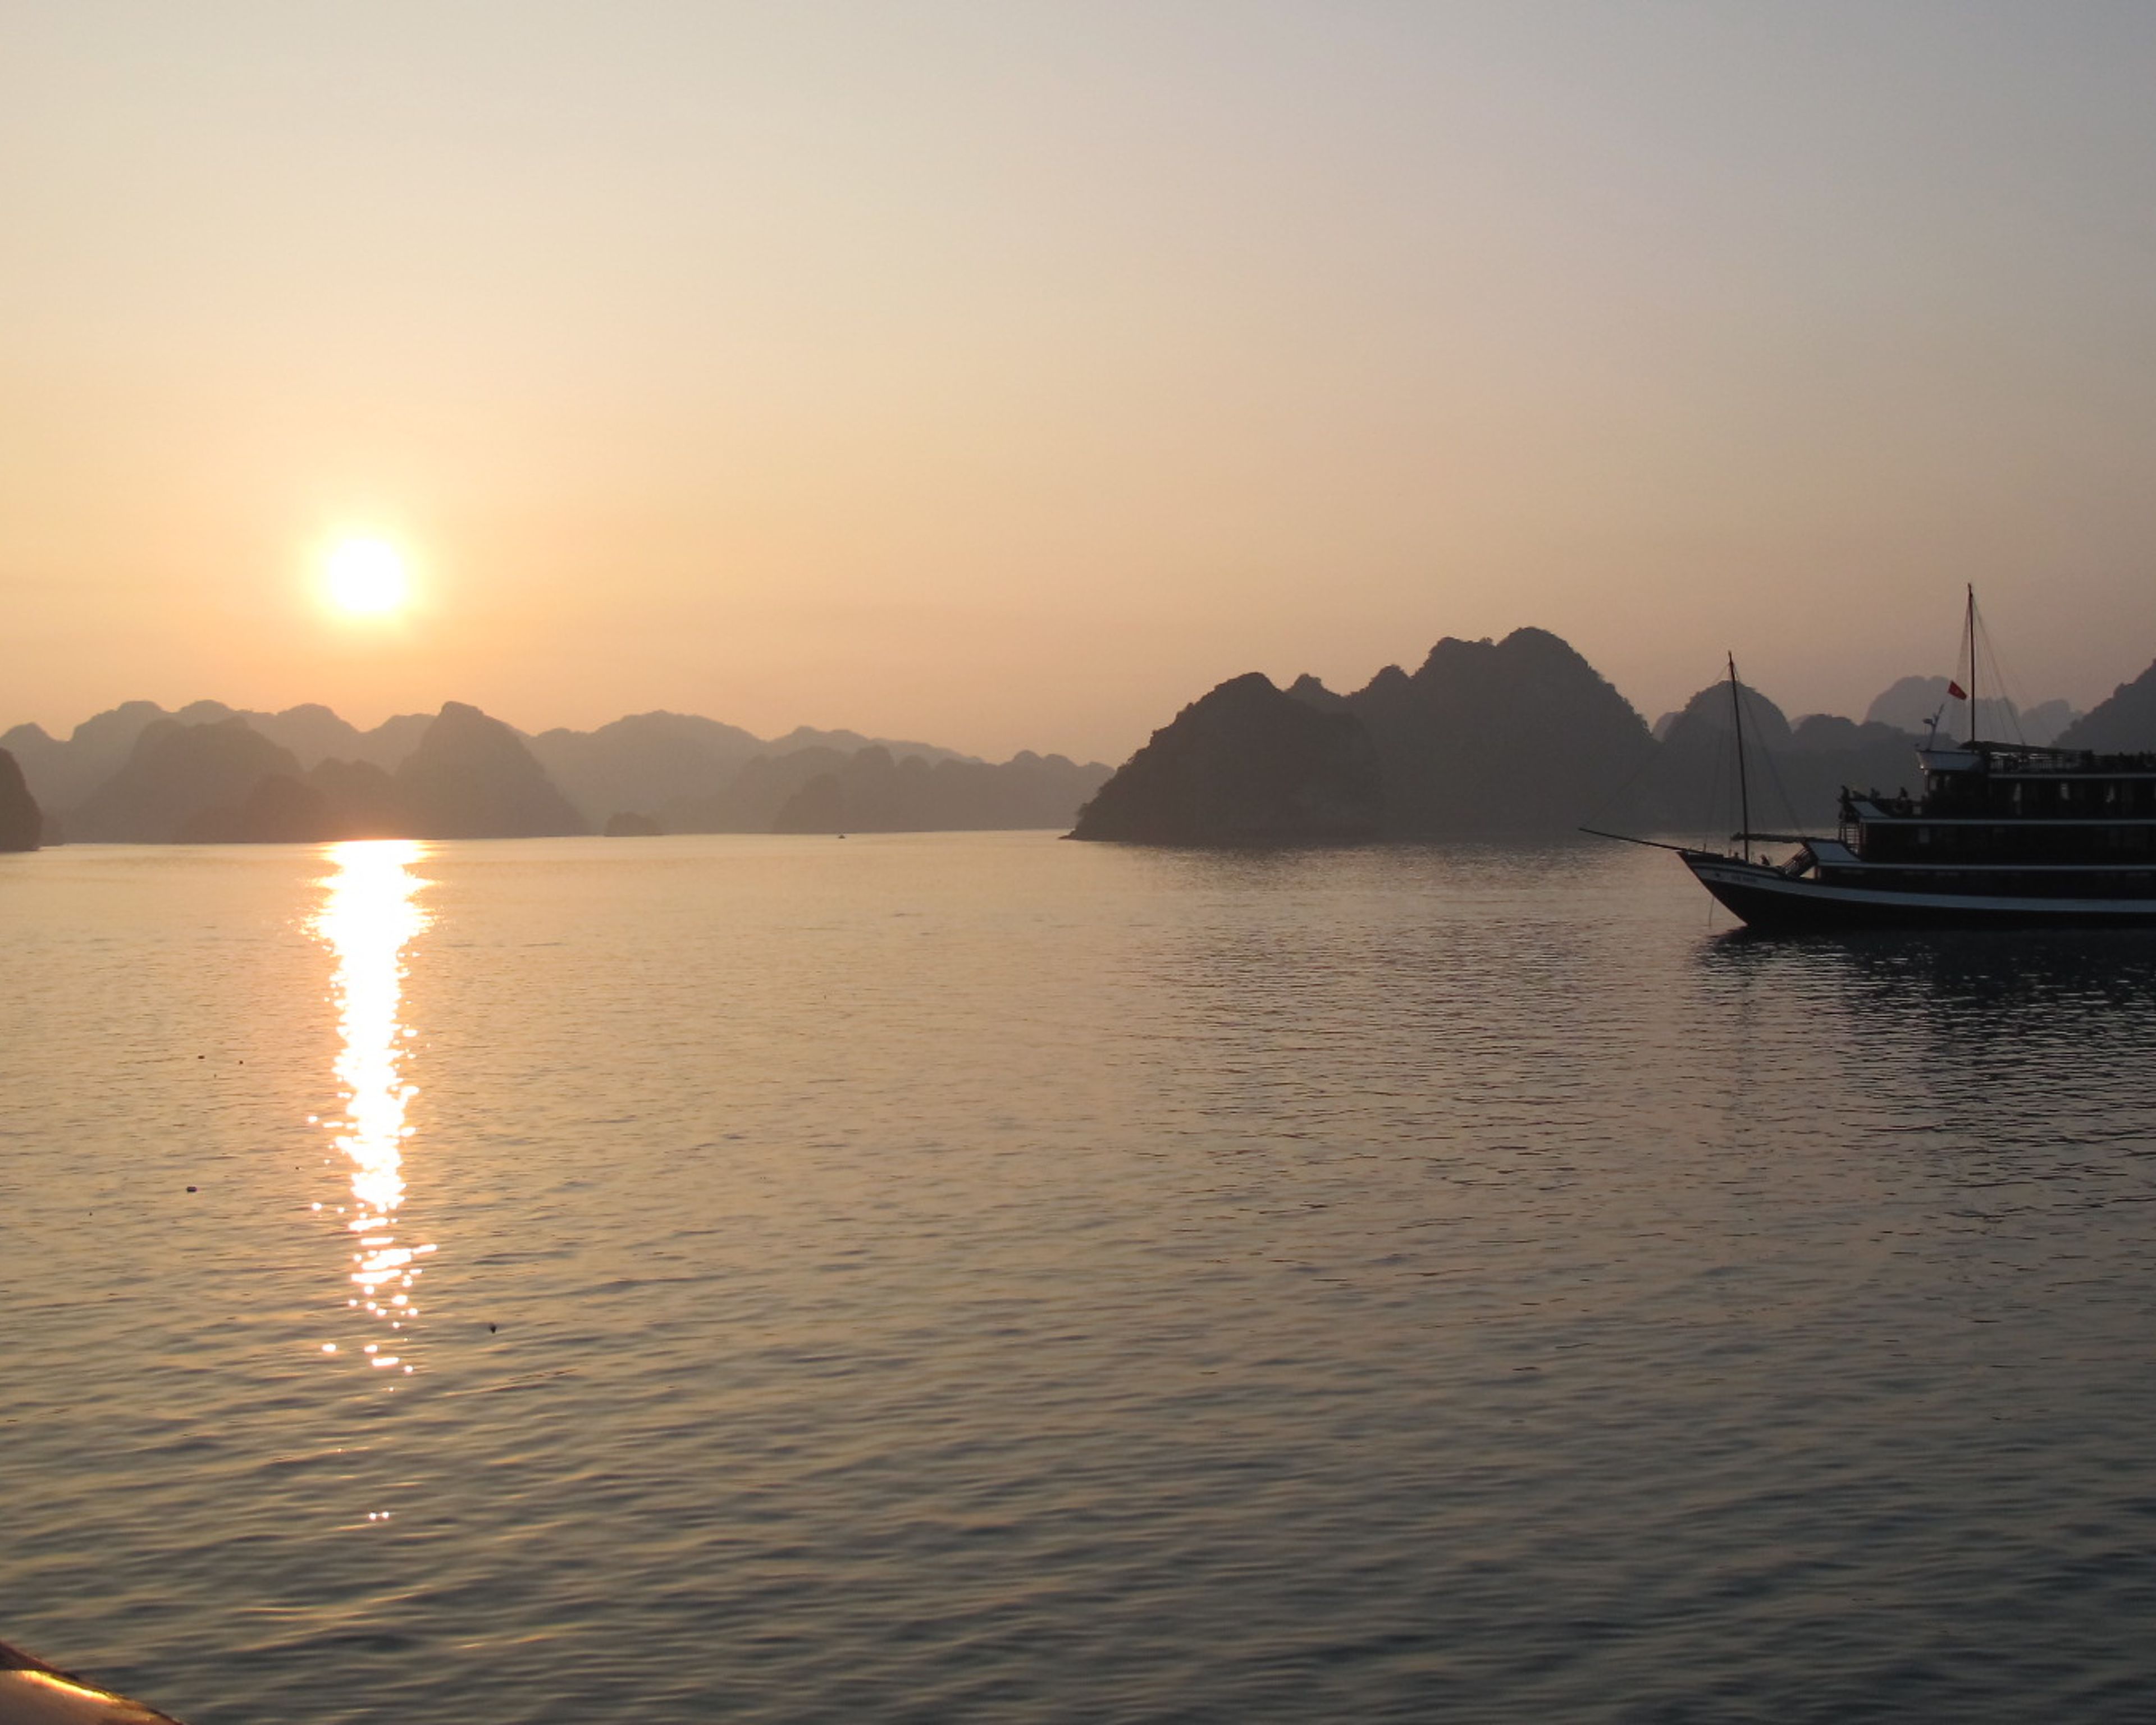 Voyage de noces entre Vietnam et Cambodge, parenthèse romantique